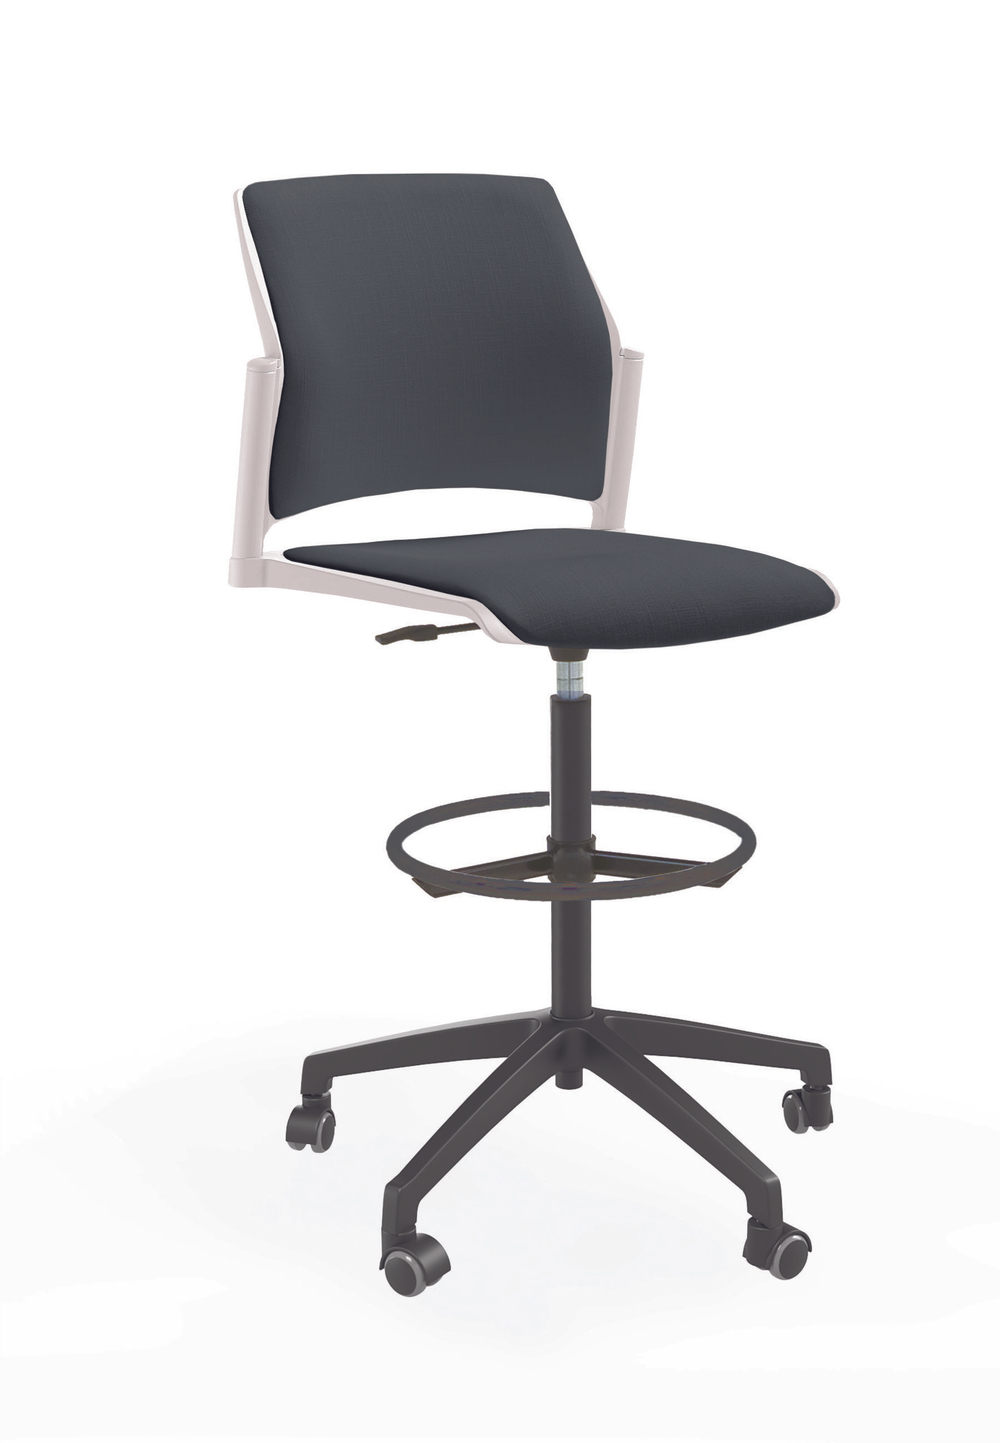 Кресло кассира Rewind каркас черный, пластик белый, база пластиковая чёрная, без подлокотников, сидение и спинка антрацит